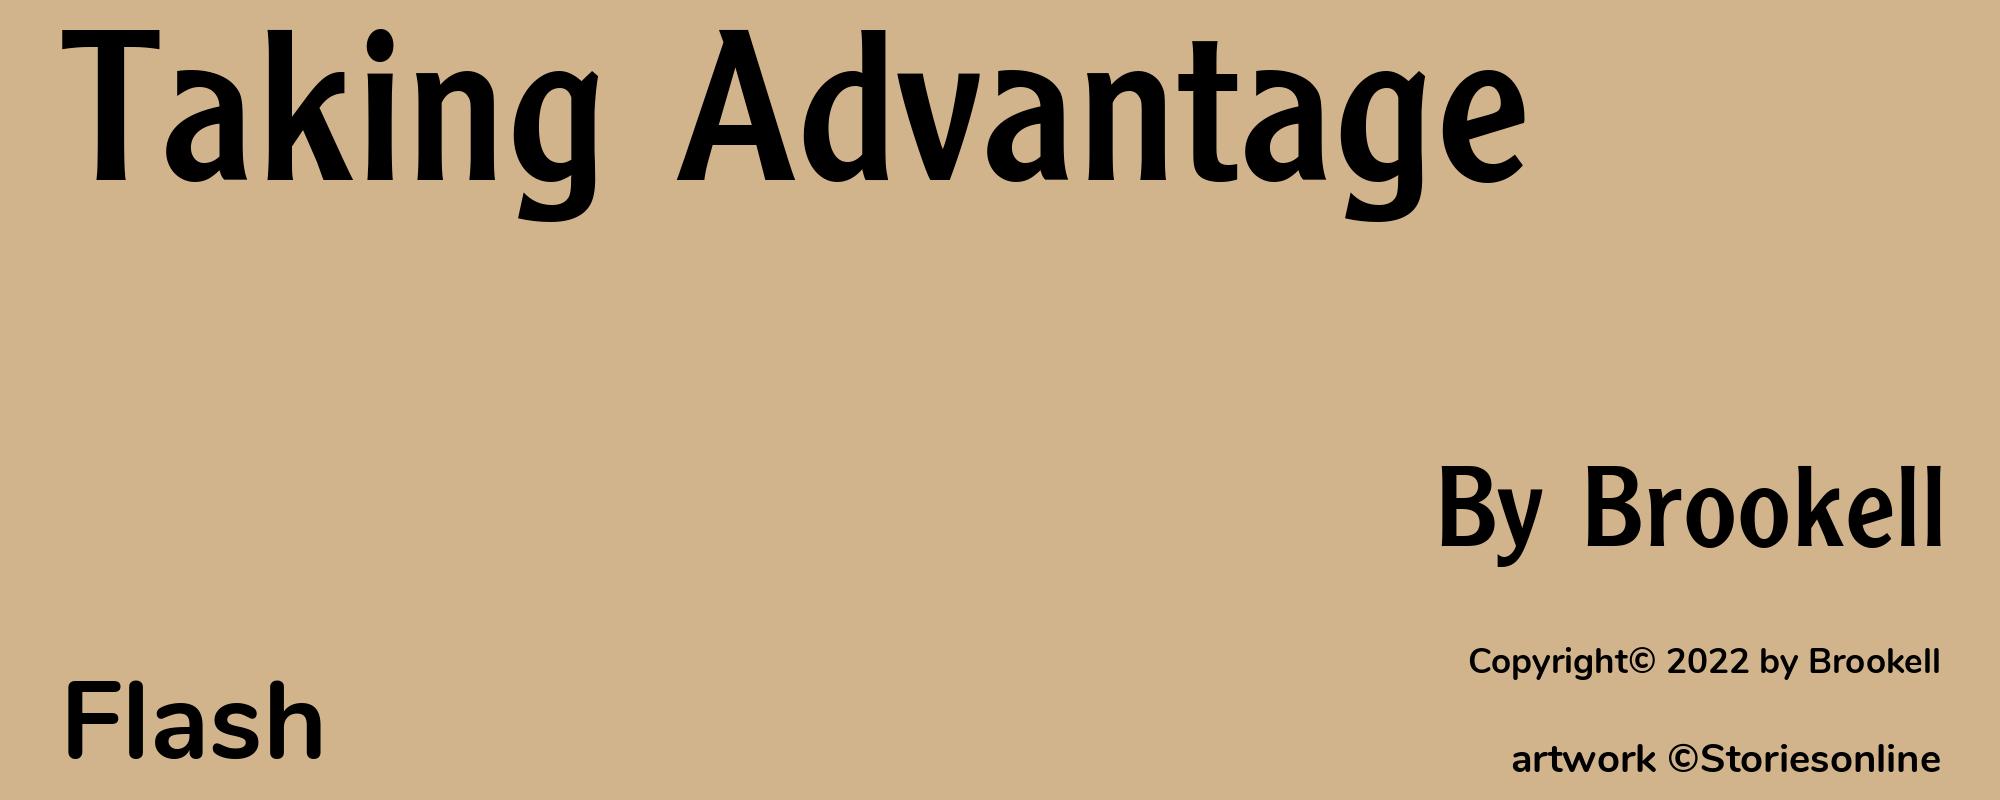 Taking Advantage - Cover